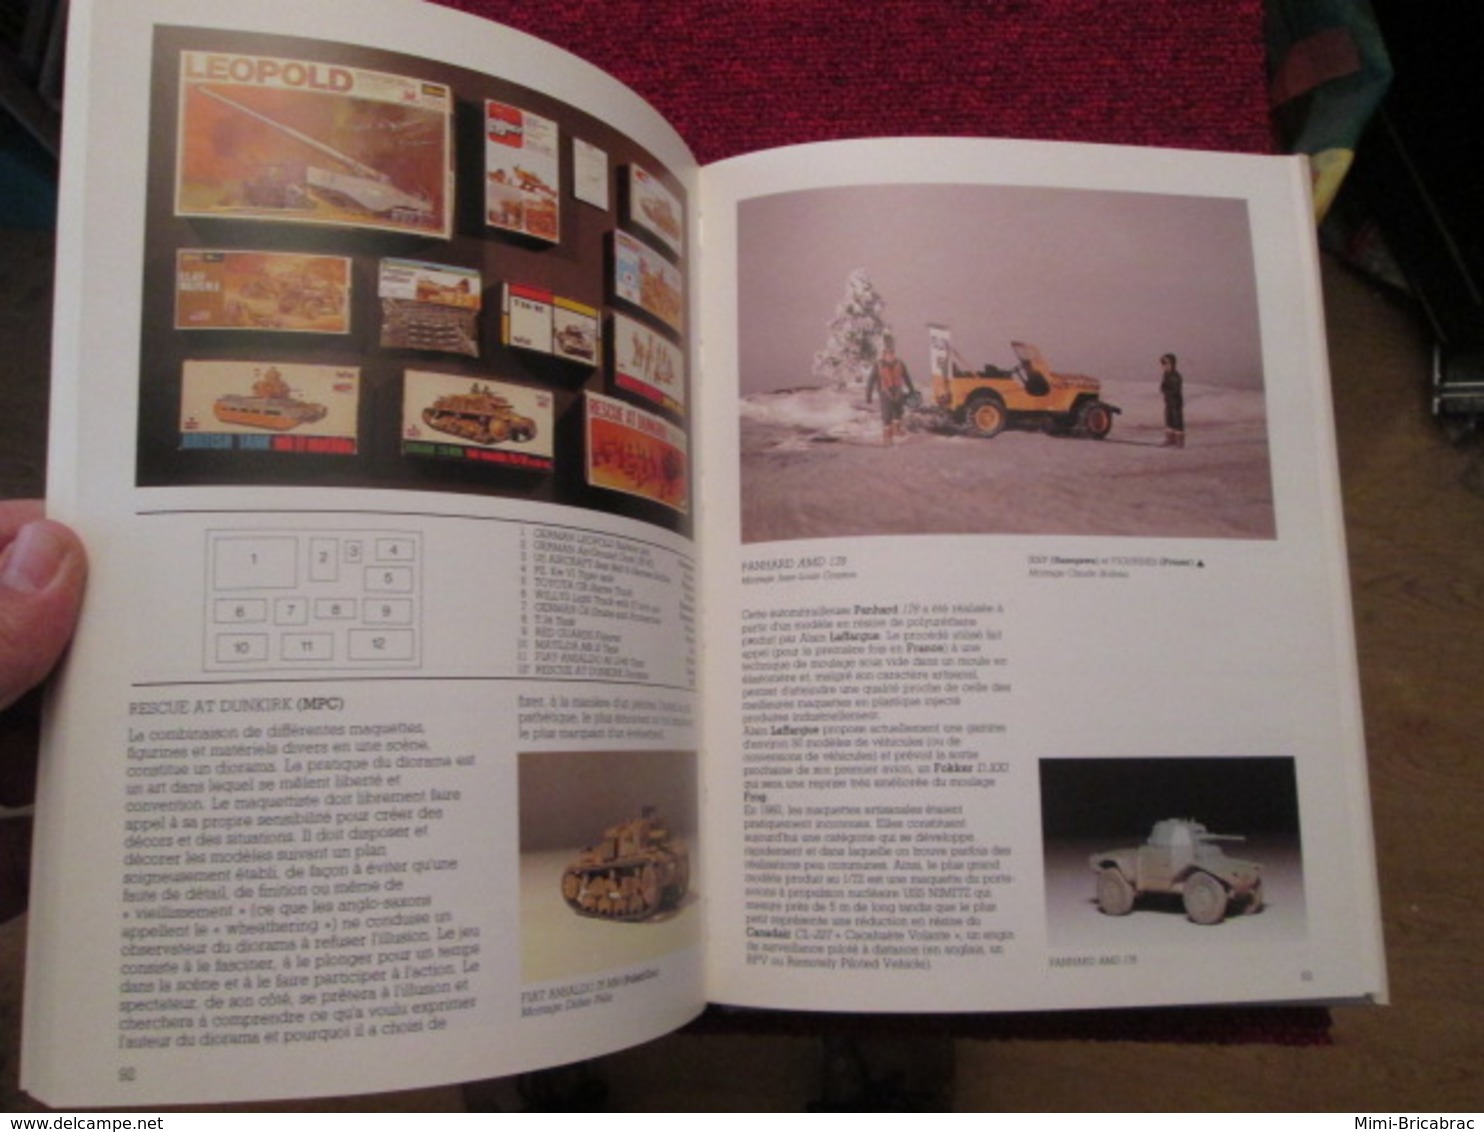 BACVERTCAGIBI / Rare Encyclopedie Des Maquettes 1/72e , 195 Pages Bine Illustrées , Très Bon état , édition De 1985 - Vliegtuigen